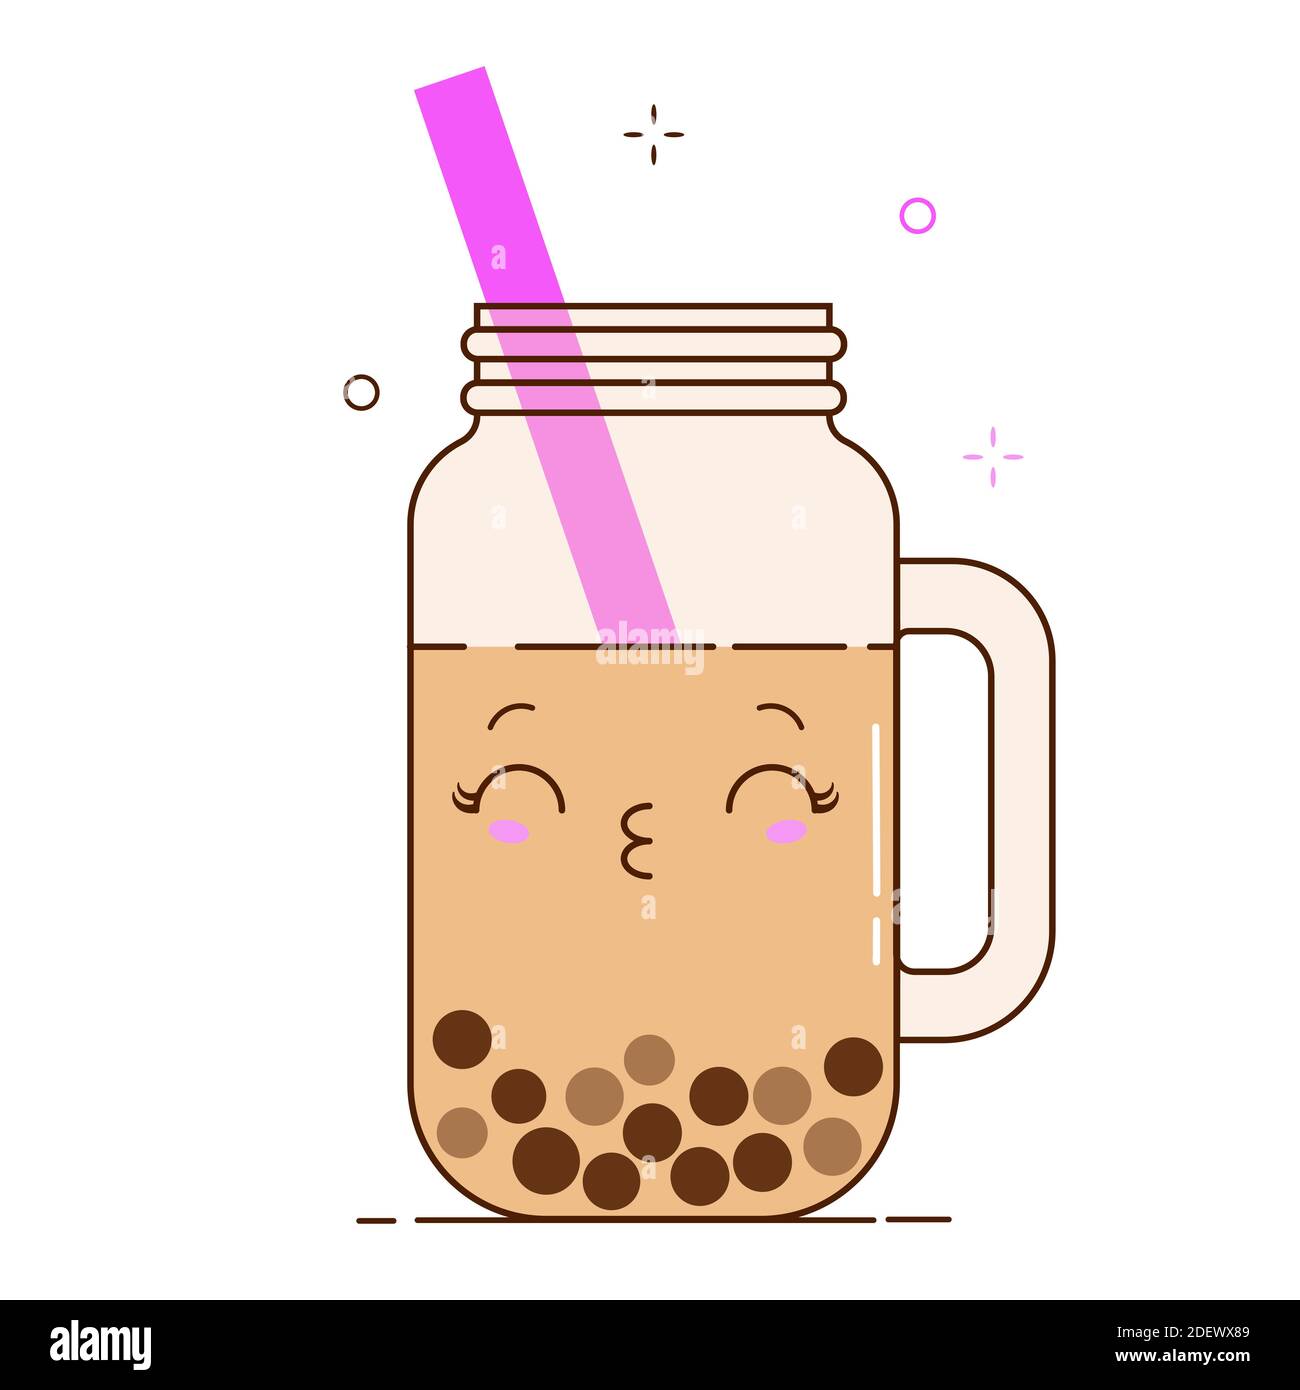 Brown Bubble Milch Tee Anzeigen mit leckeren Tapioka schwarzen Perlen.  Nette Blase Tee kawaii lächelte Charakter. Taiwanesisches berühmtes und  beliebtes Getränk Boba Stock-Vektorgrafik - Alamy